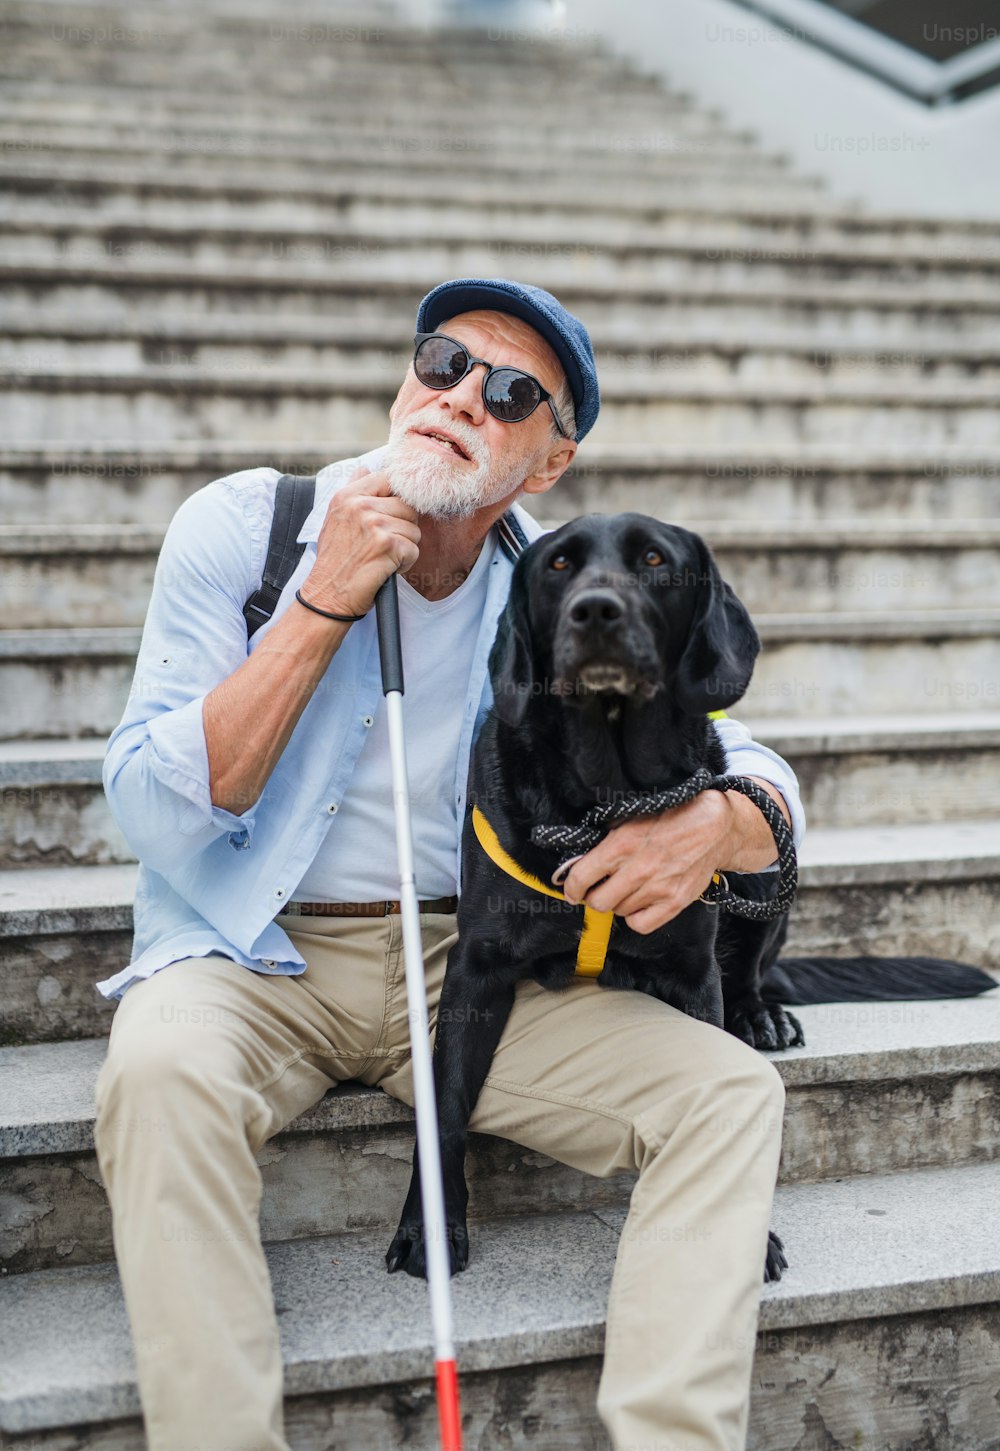 Vista frontal do cego sênior com cão-guia sentado as escadas da cidade, descansando.